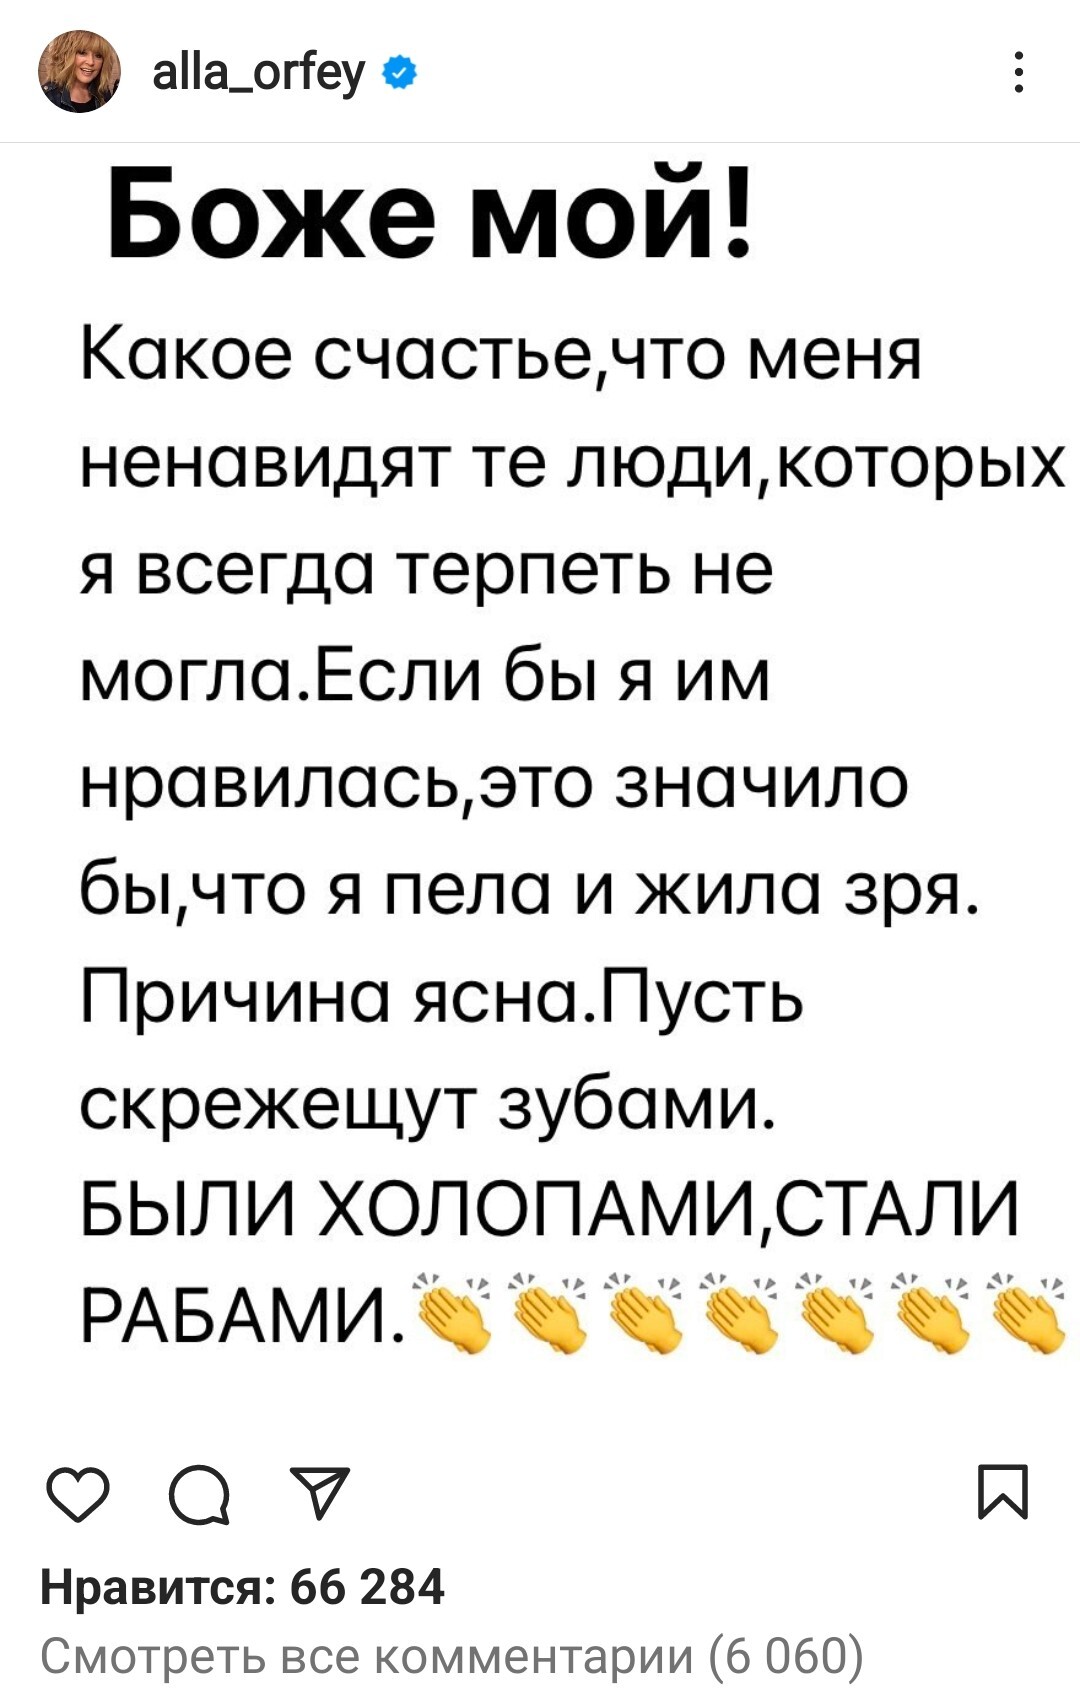 «Сиськи спрячь»: Алла Пугачева публично унизила известную певицу на глазах у публики